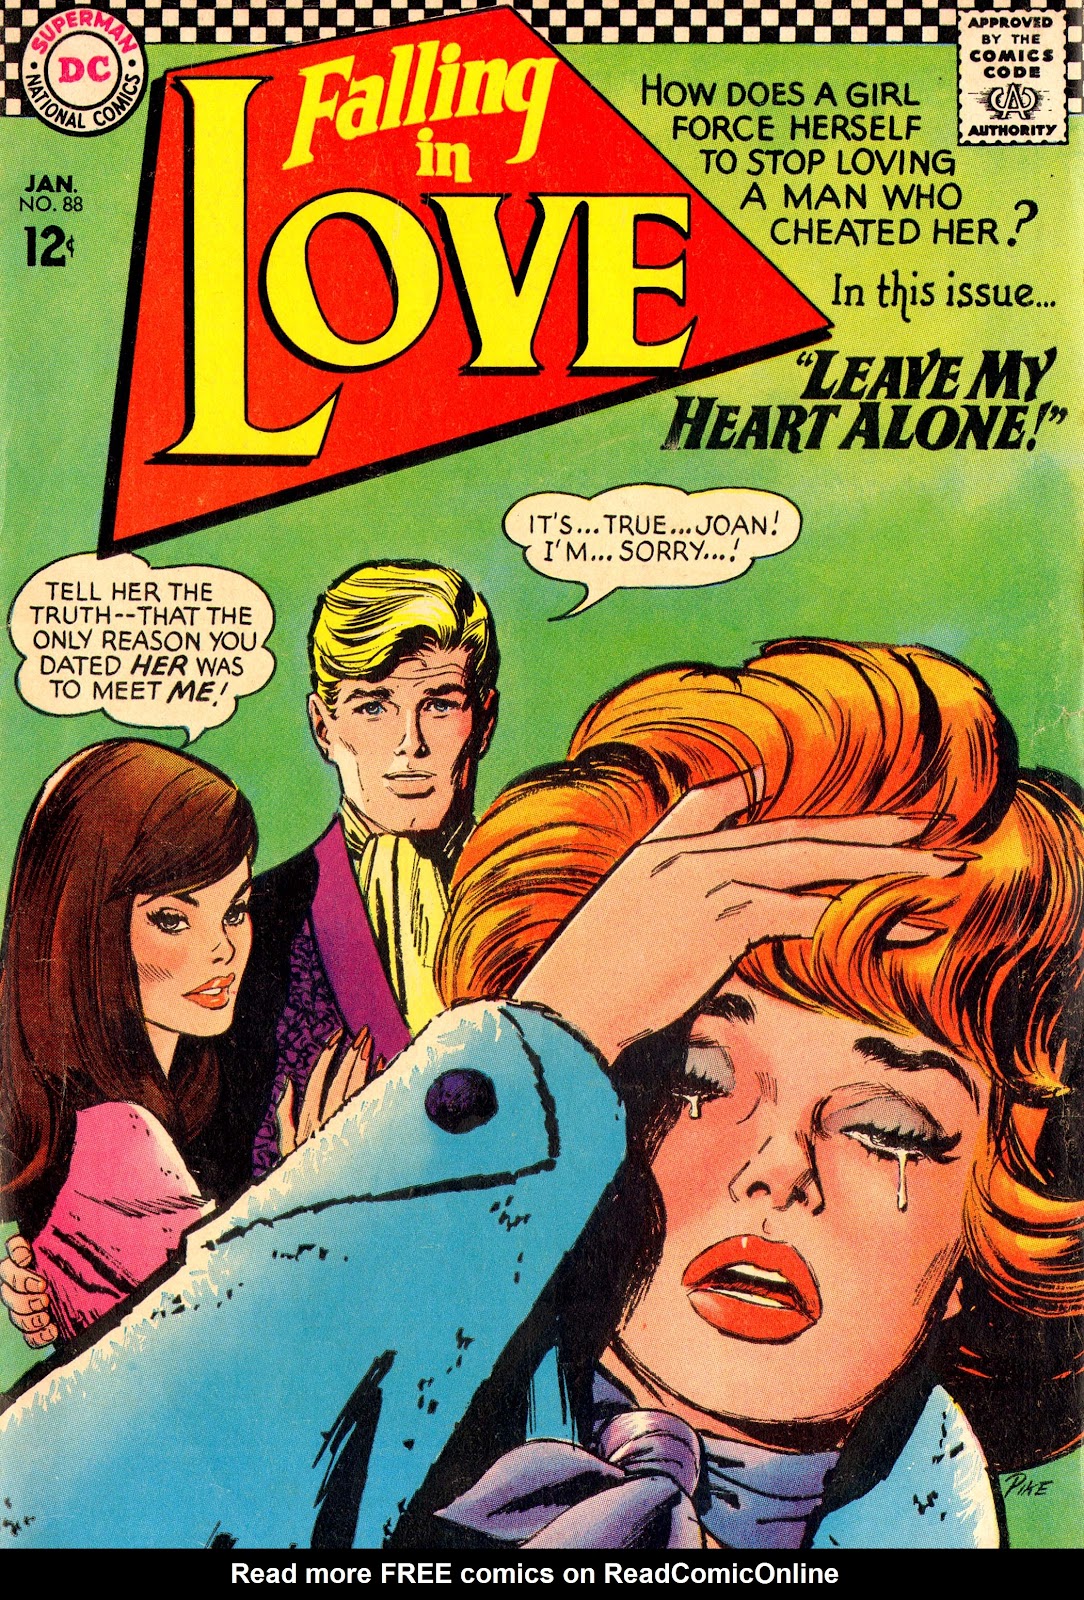 Falling in Love комикс. Комиксы 1967. Pcmaniac88 комиксы. Love 88. Issue love